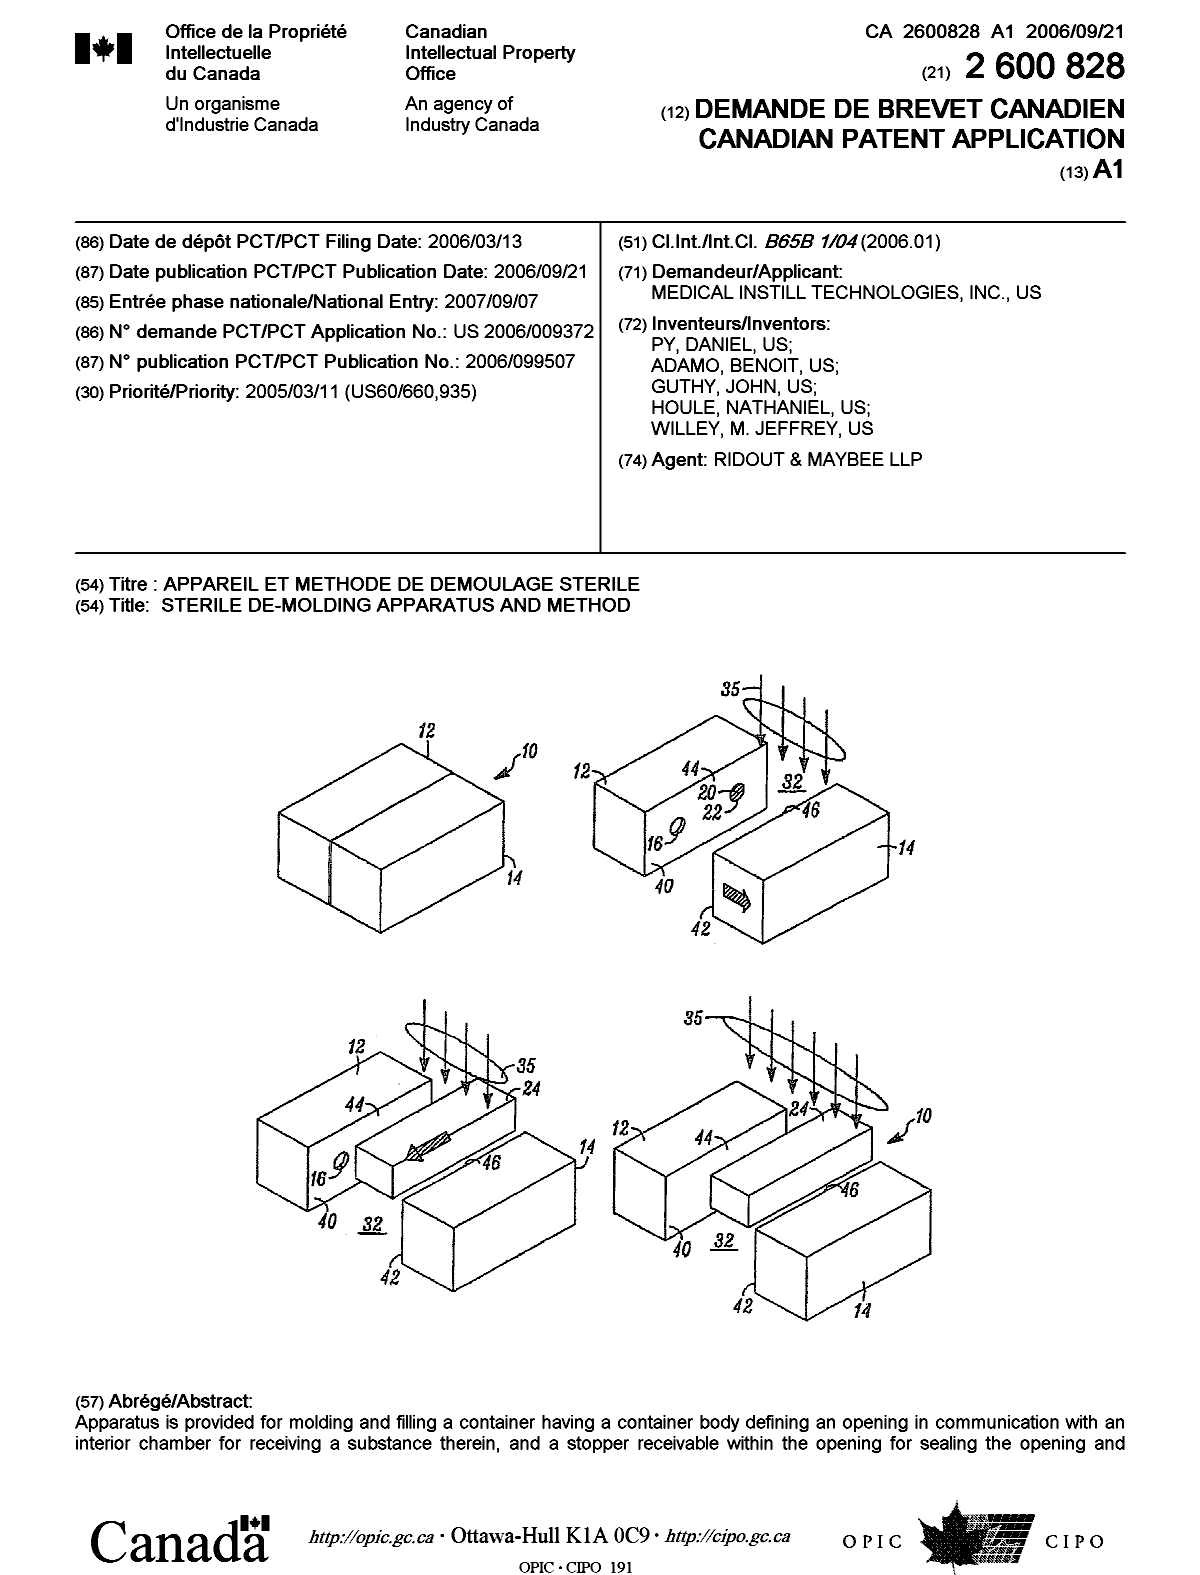 Document de brevet canadien 2600828. Page couverture 20071127. Image 1 de 2